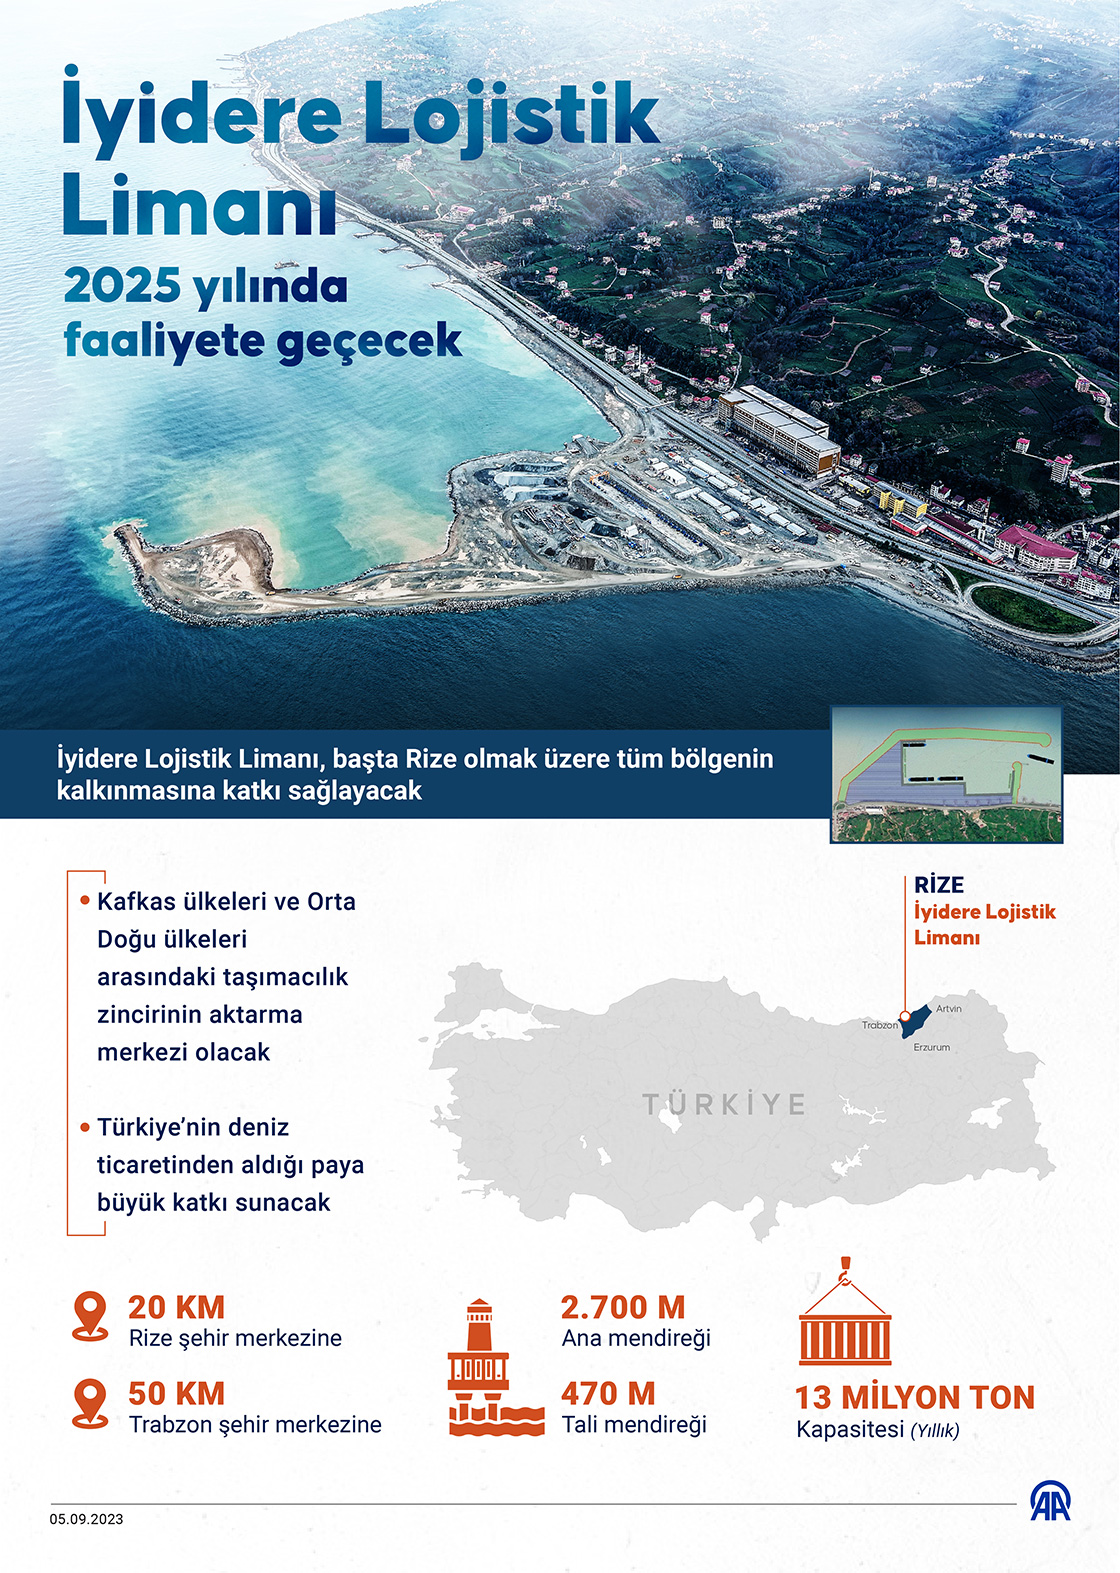 İyidere Lojistik Limanı 2025 yılında faaliyete geçecek